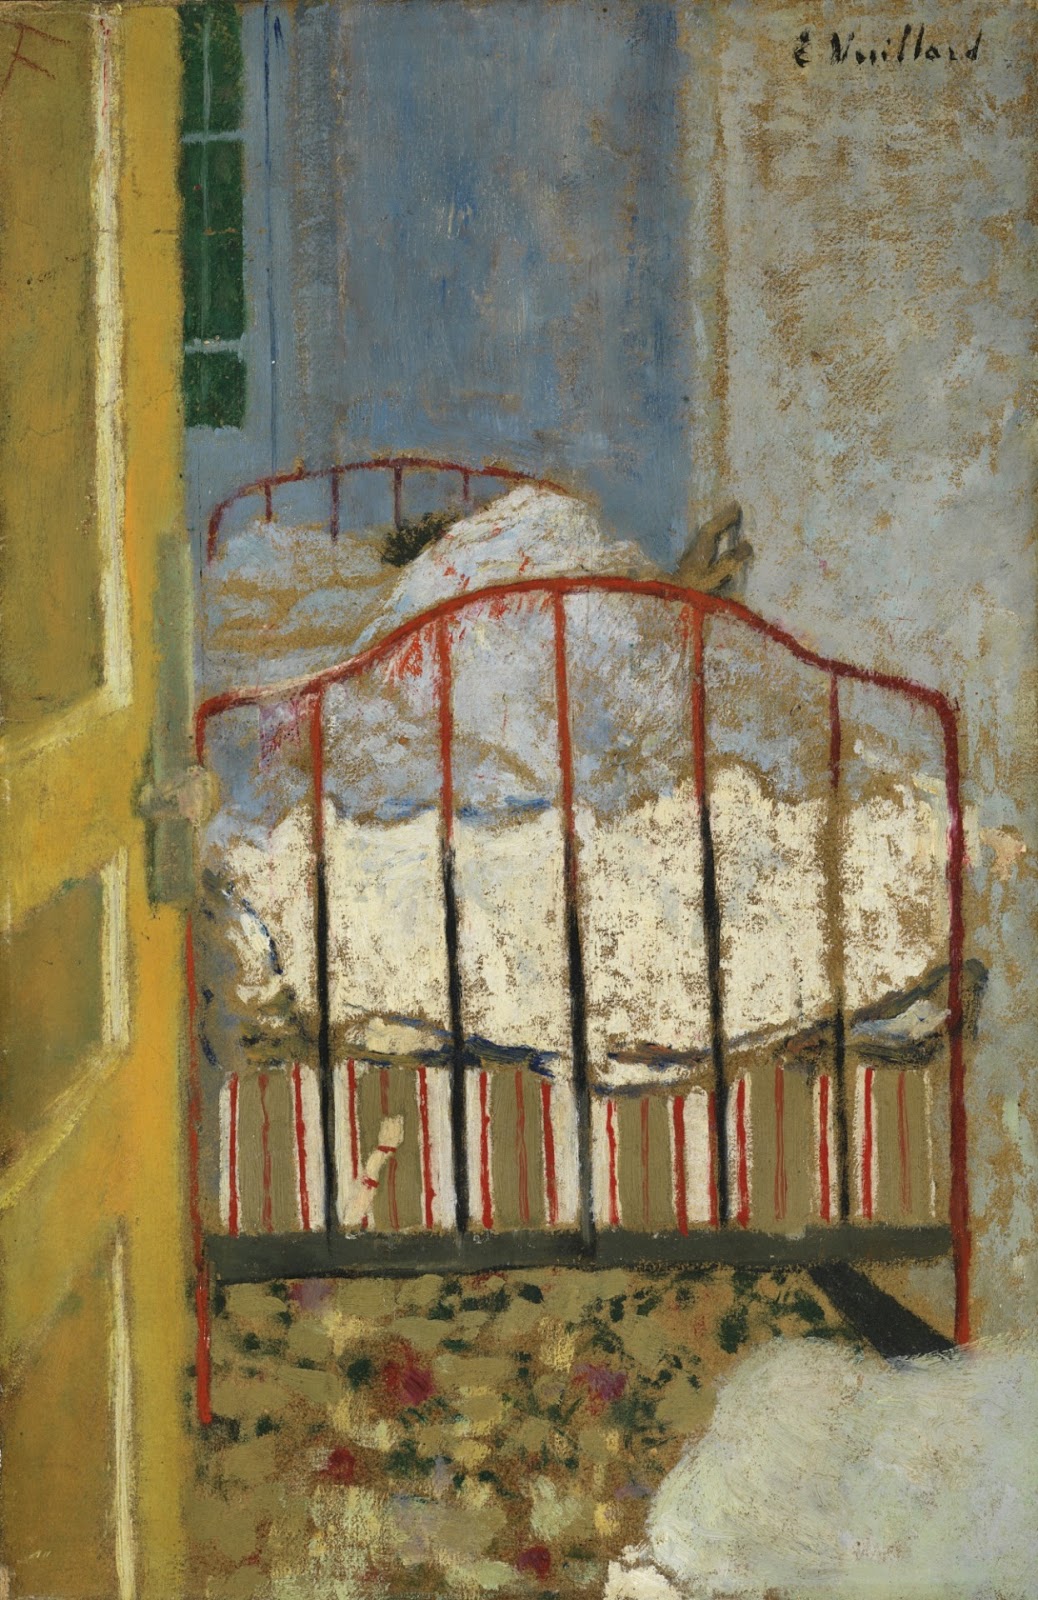 Edouard+Vuillard-1868-1940 (13).jpg